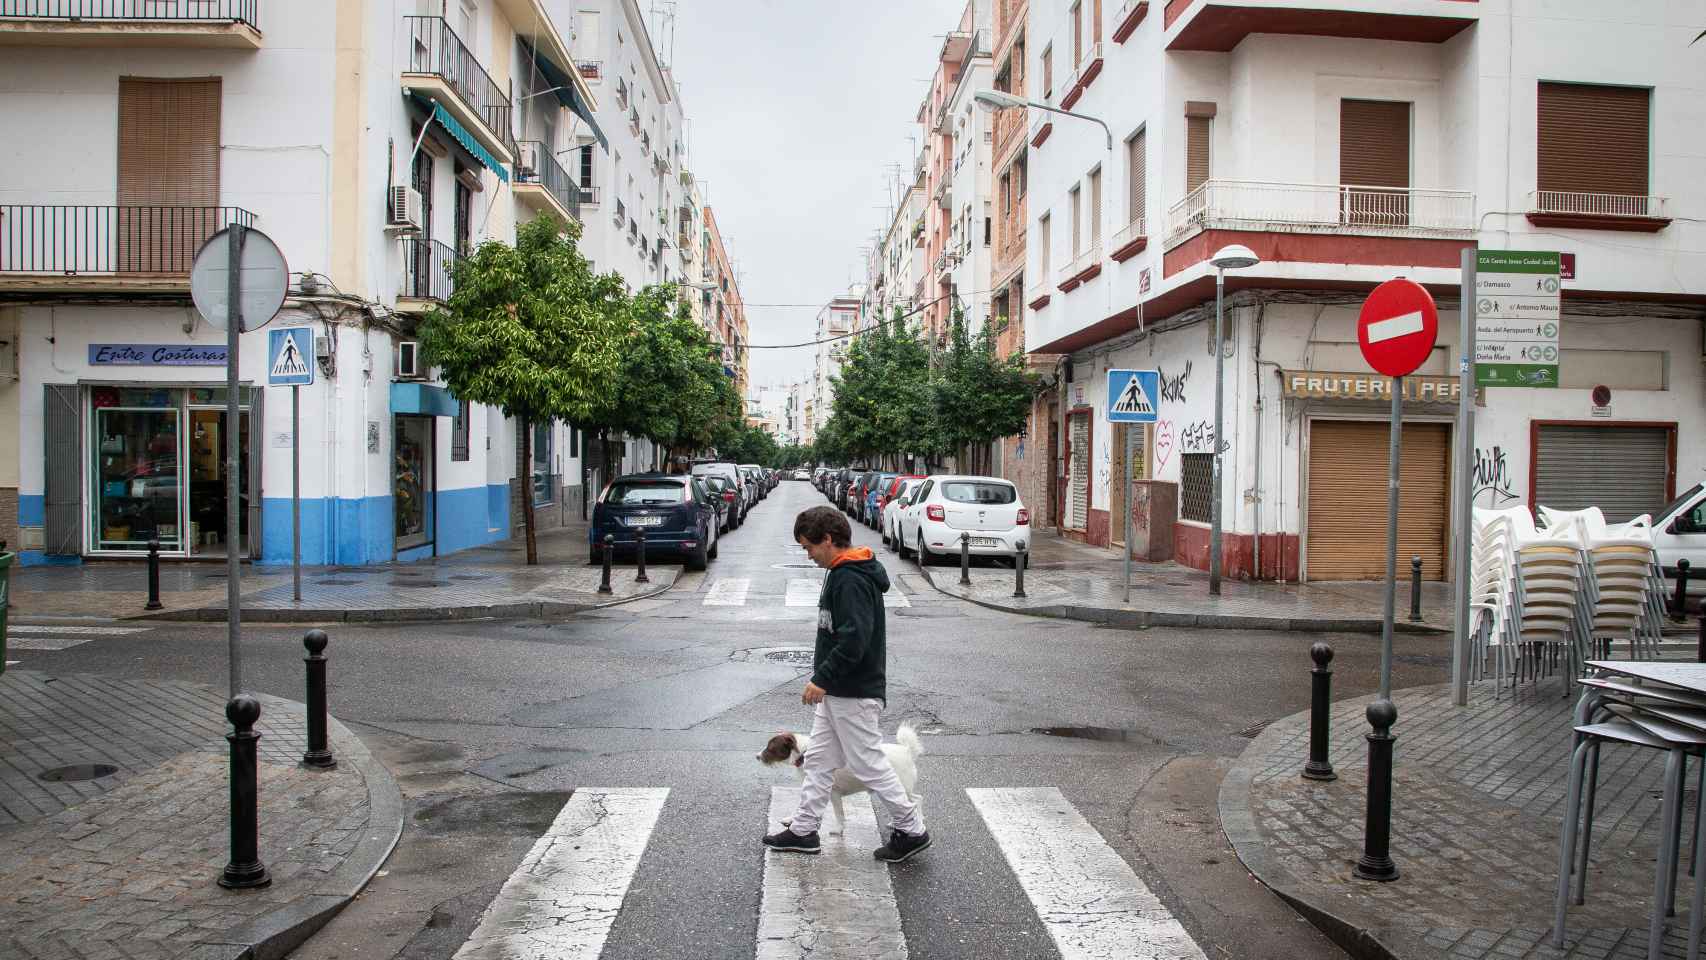 Luis paseando a su perro Chimba por las calles de Córdoba.